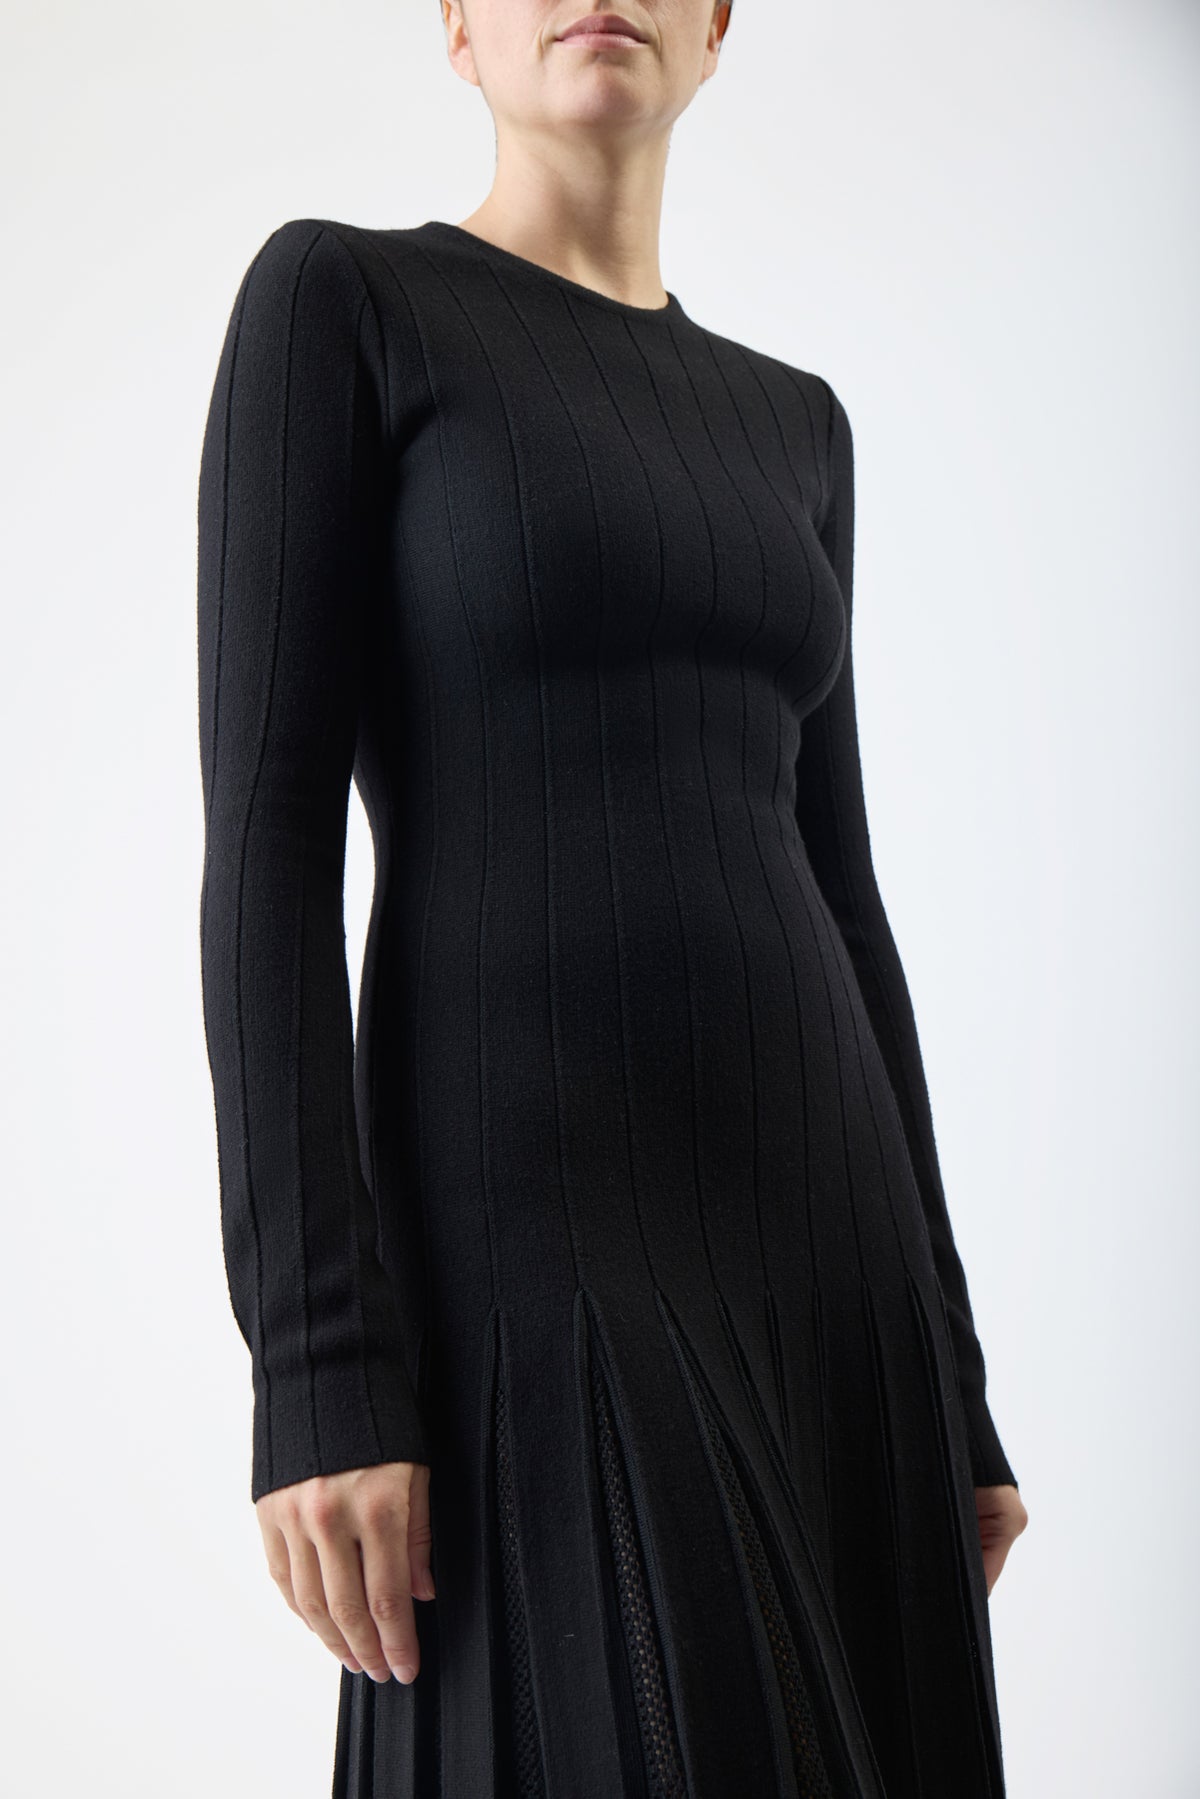 Walsh Knit Pleated Dress in Black Wool